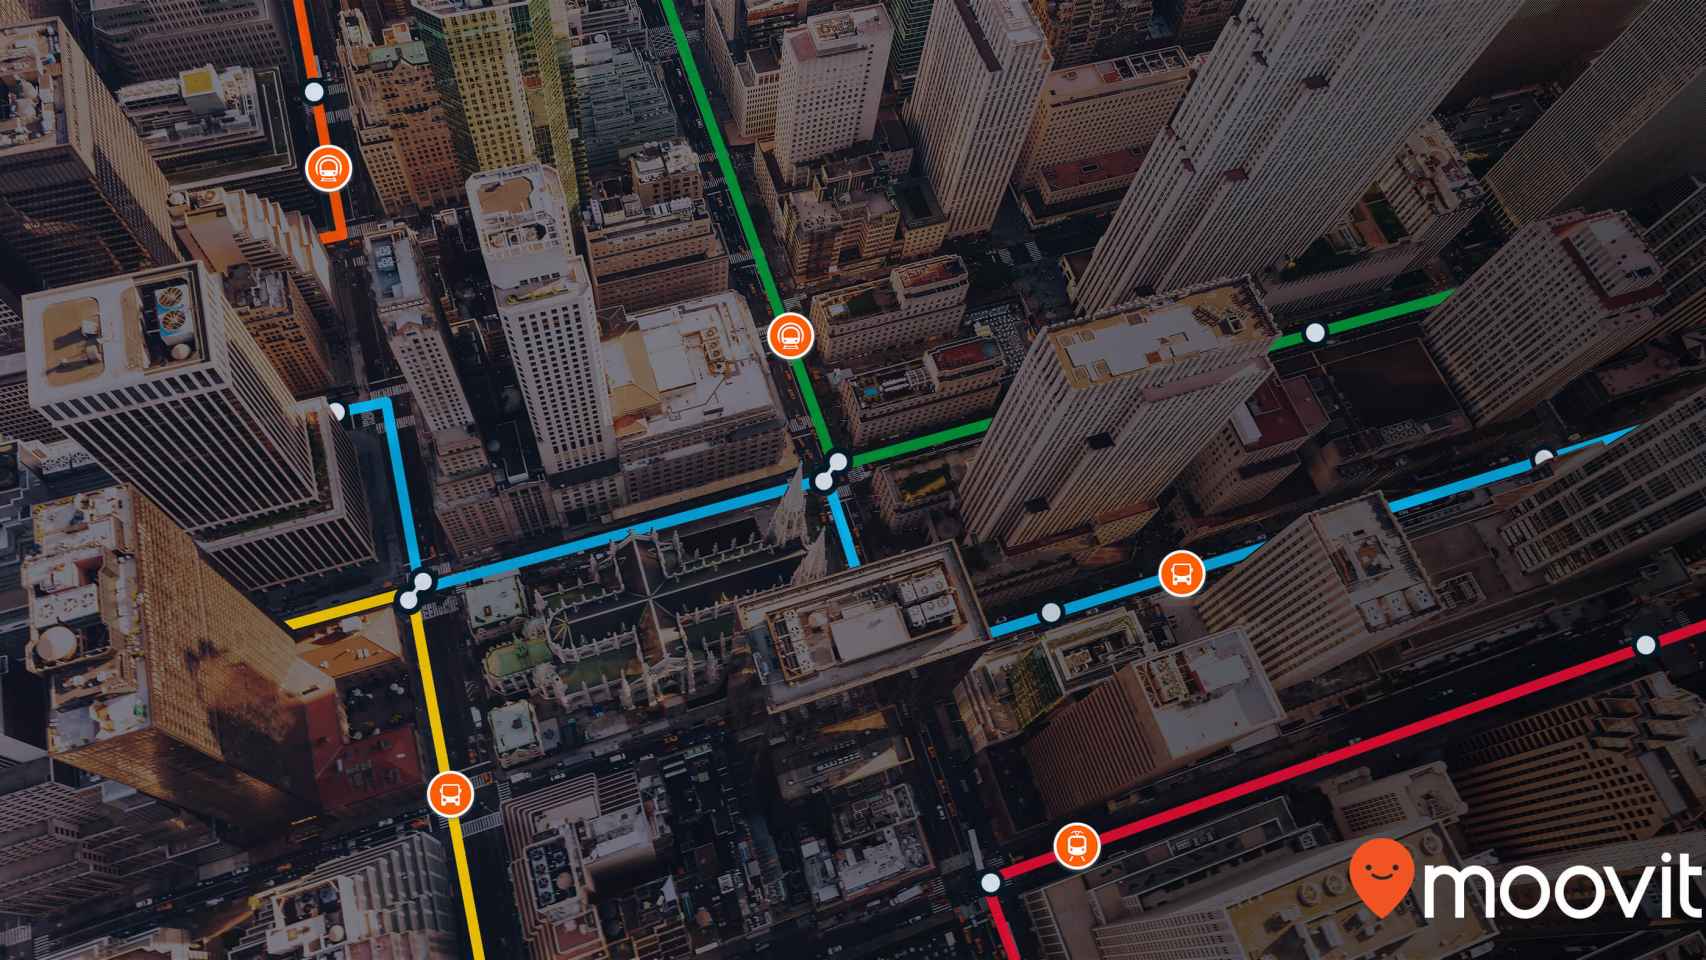 Moovit maneja mil millones de puntos de datos de transporte público.